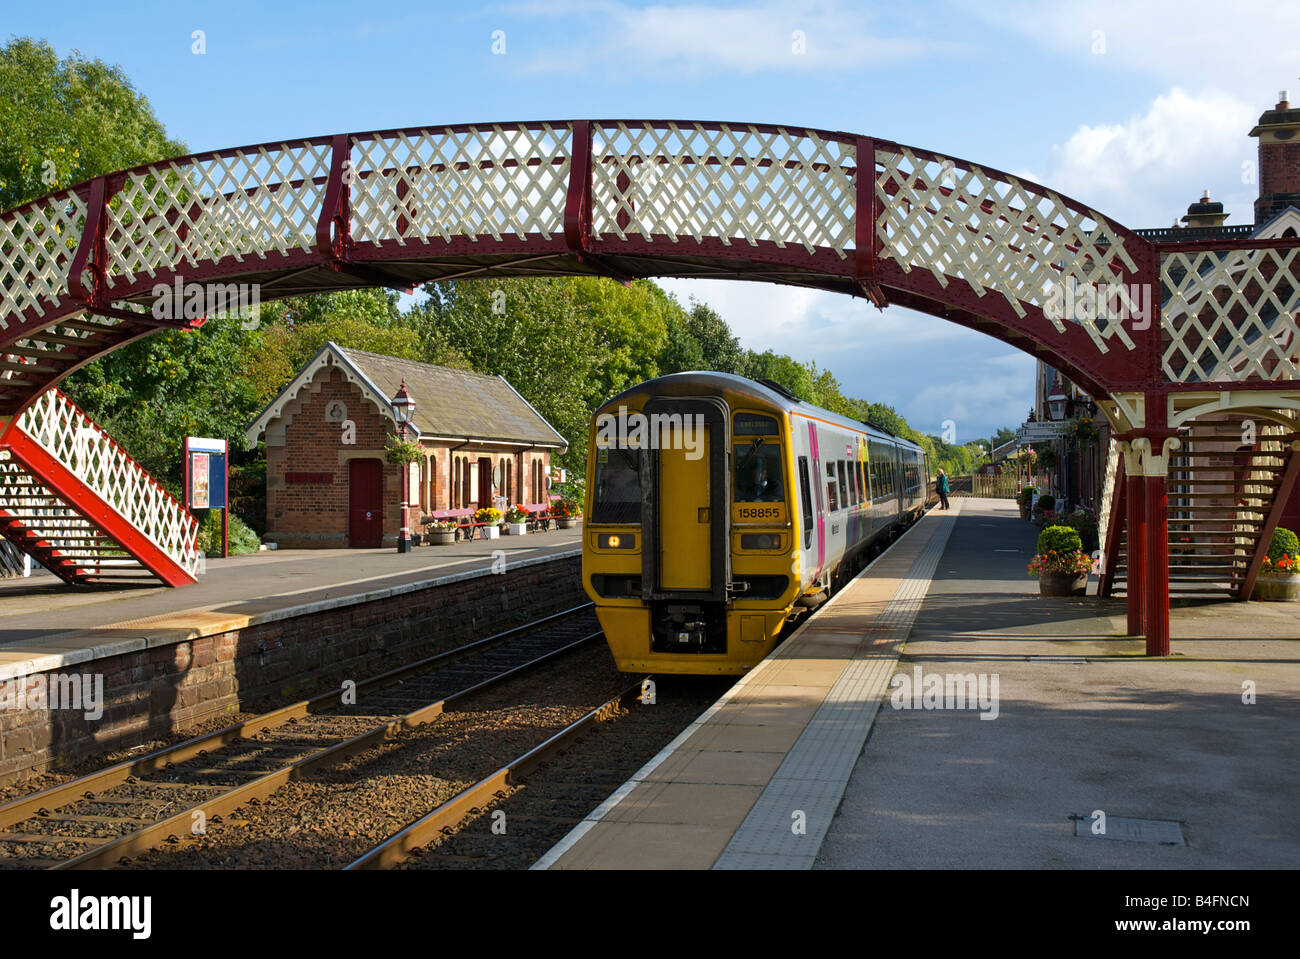 In treno arrivando a Appleby stazione ferroviaria sulla linea Settle-Carlisle, Eden Valley, Cumbria, England Regno Unito Foto Stock